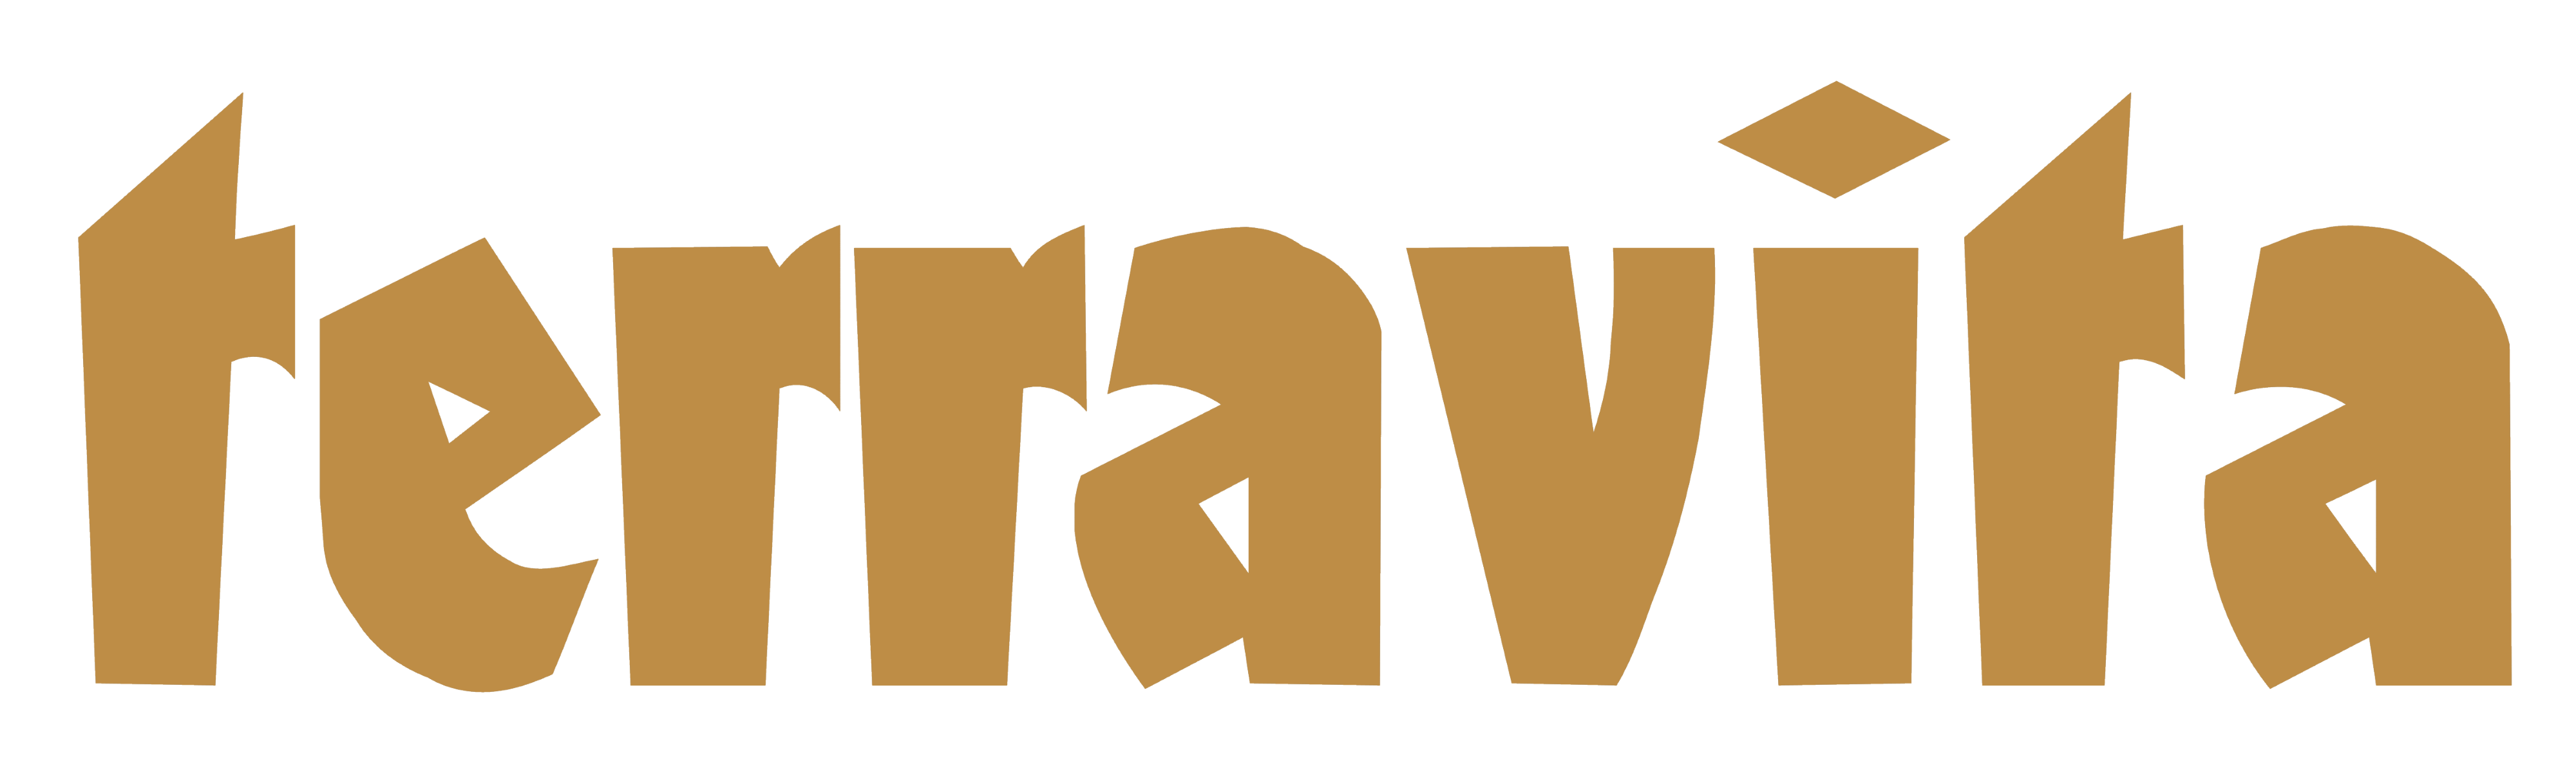 Terravita logo, logotype